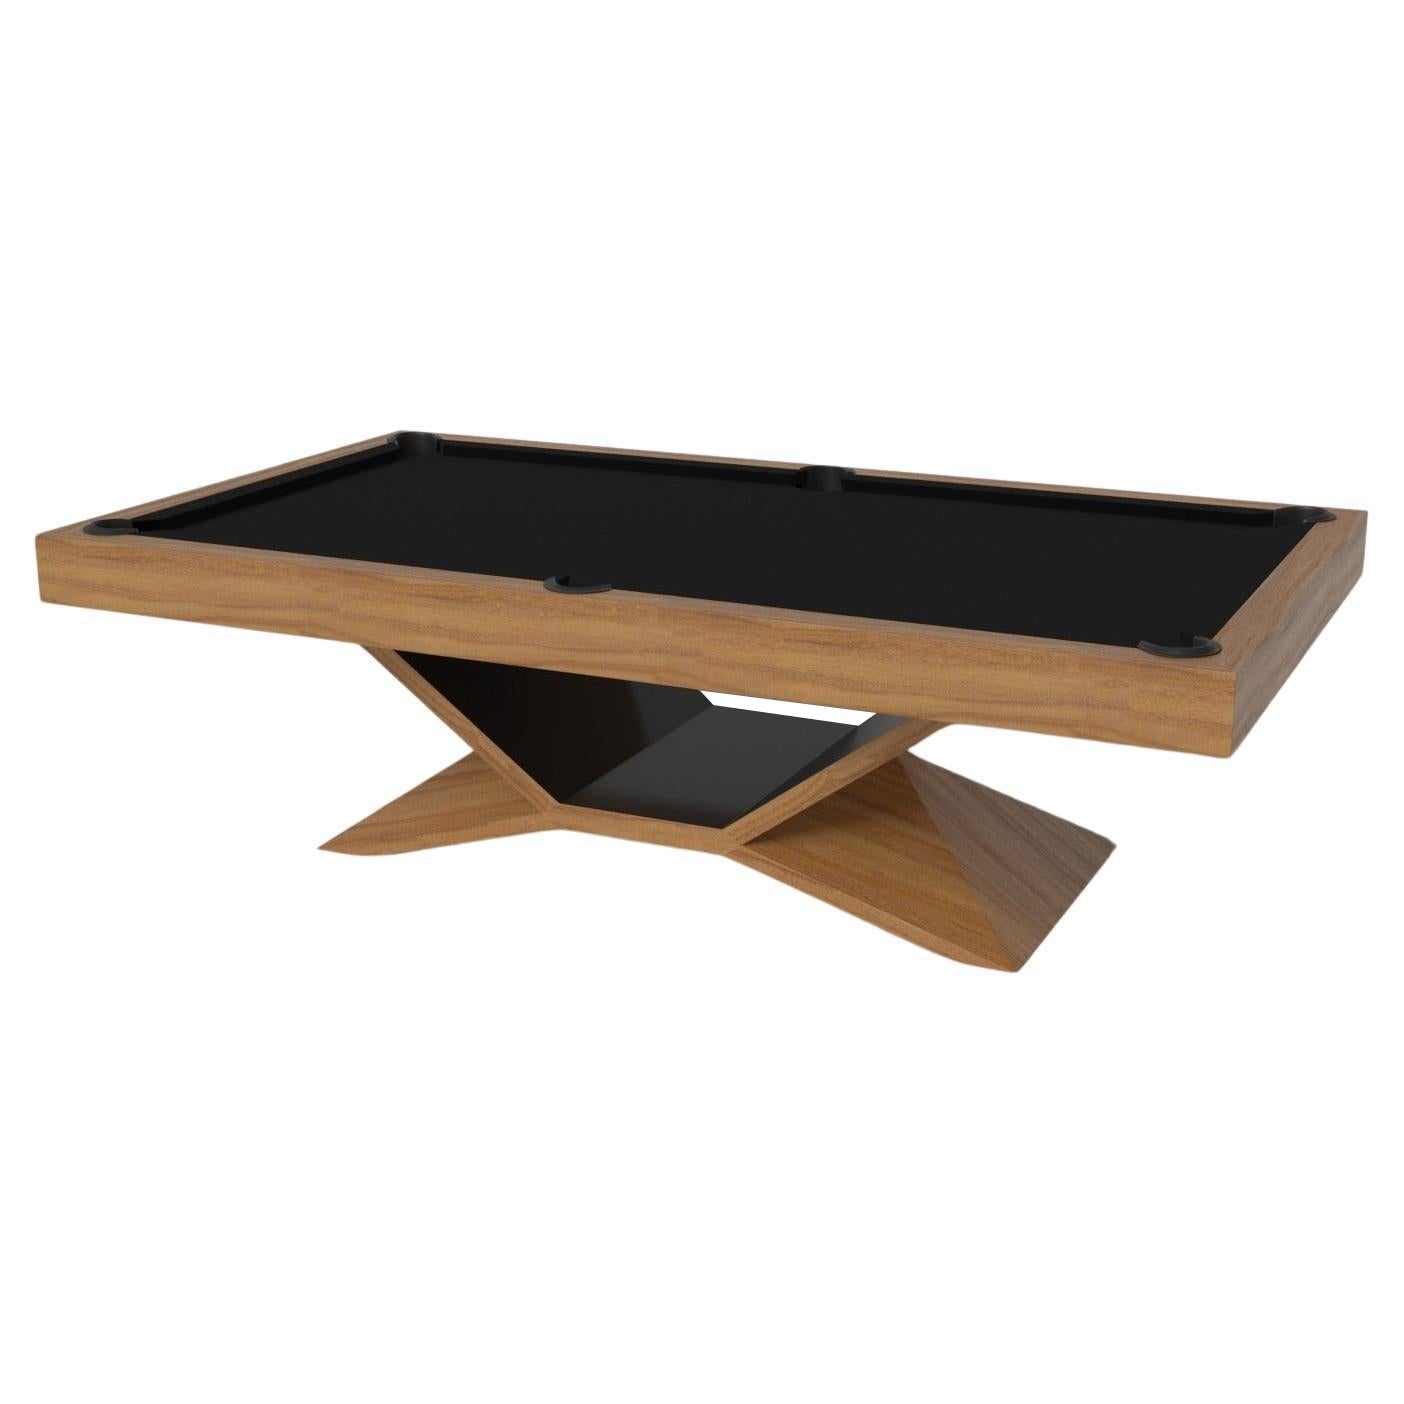 Elevate Customs Kors Pool Table / Solid Teak Wood in 8.5' - Made in USA